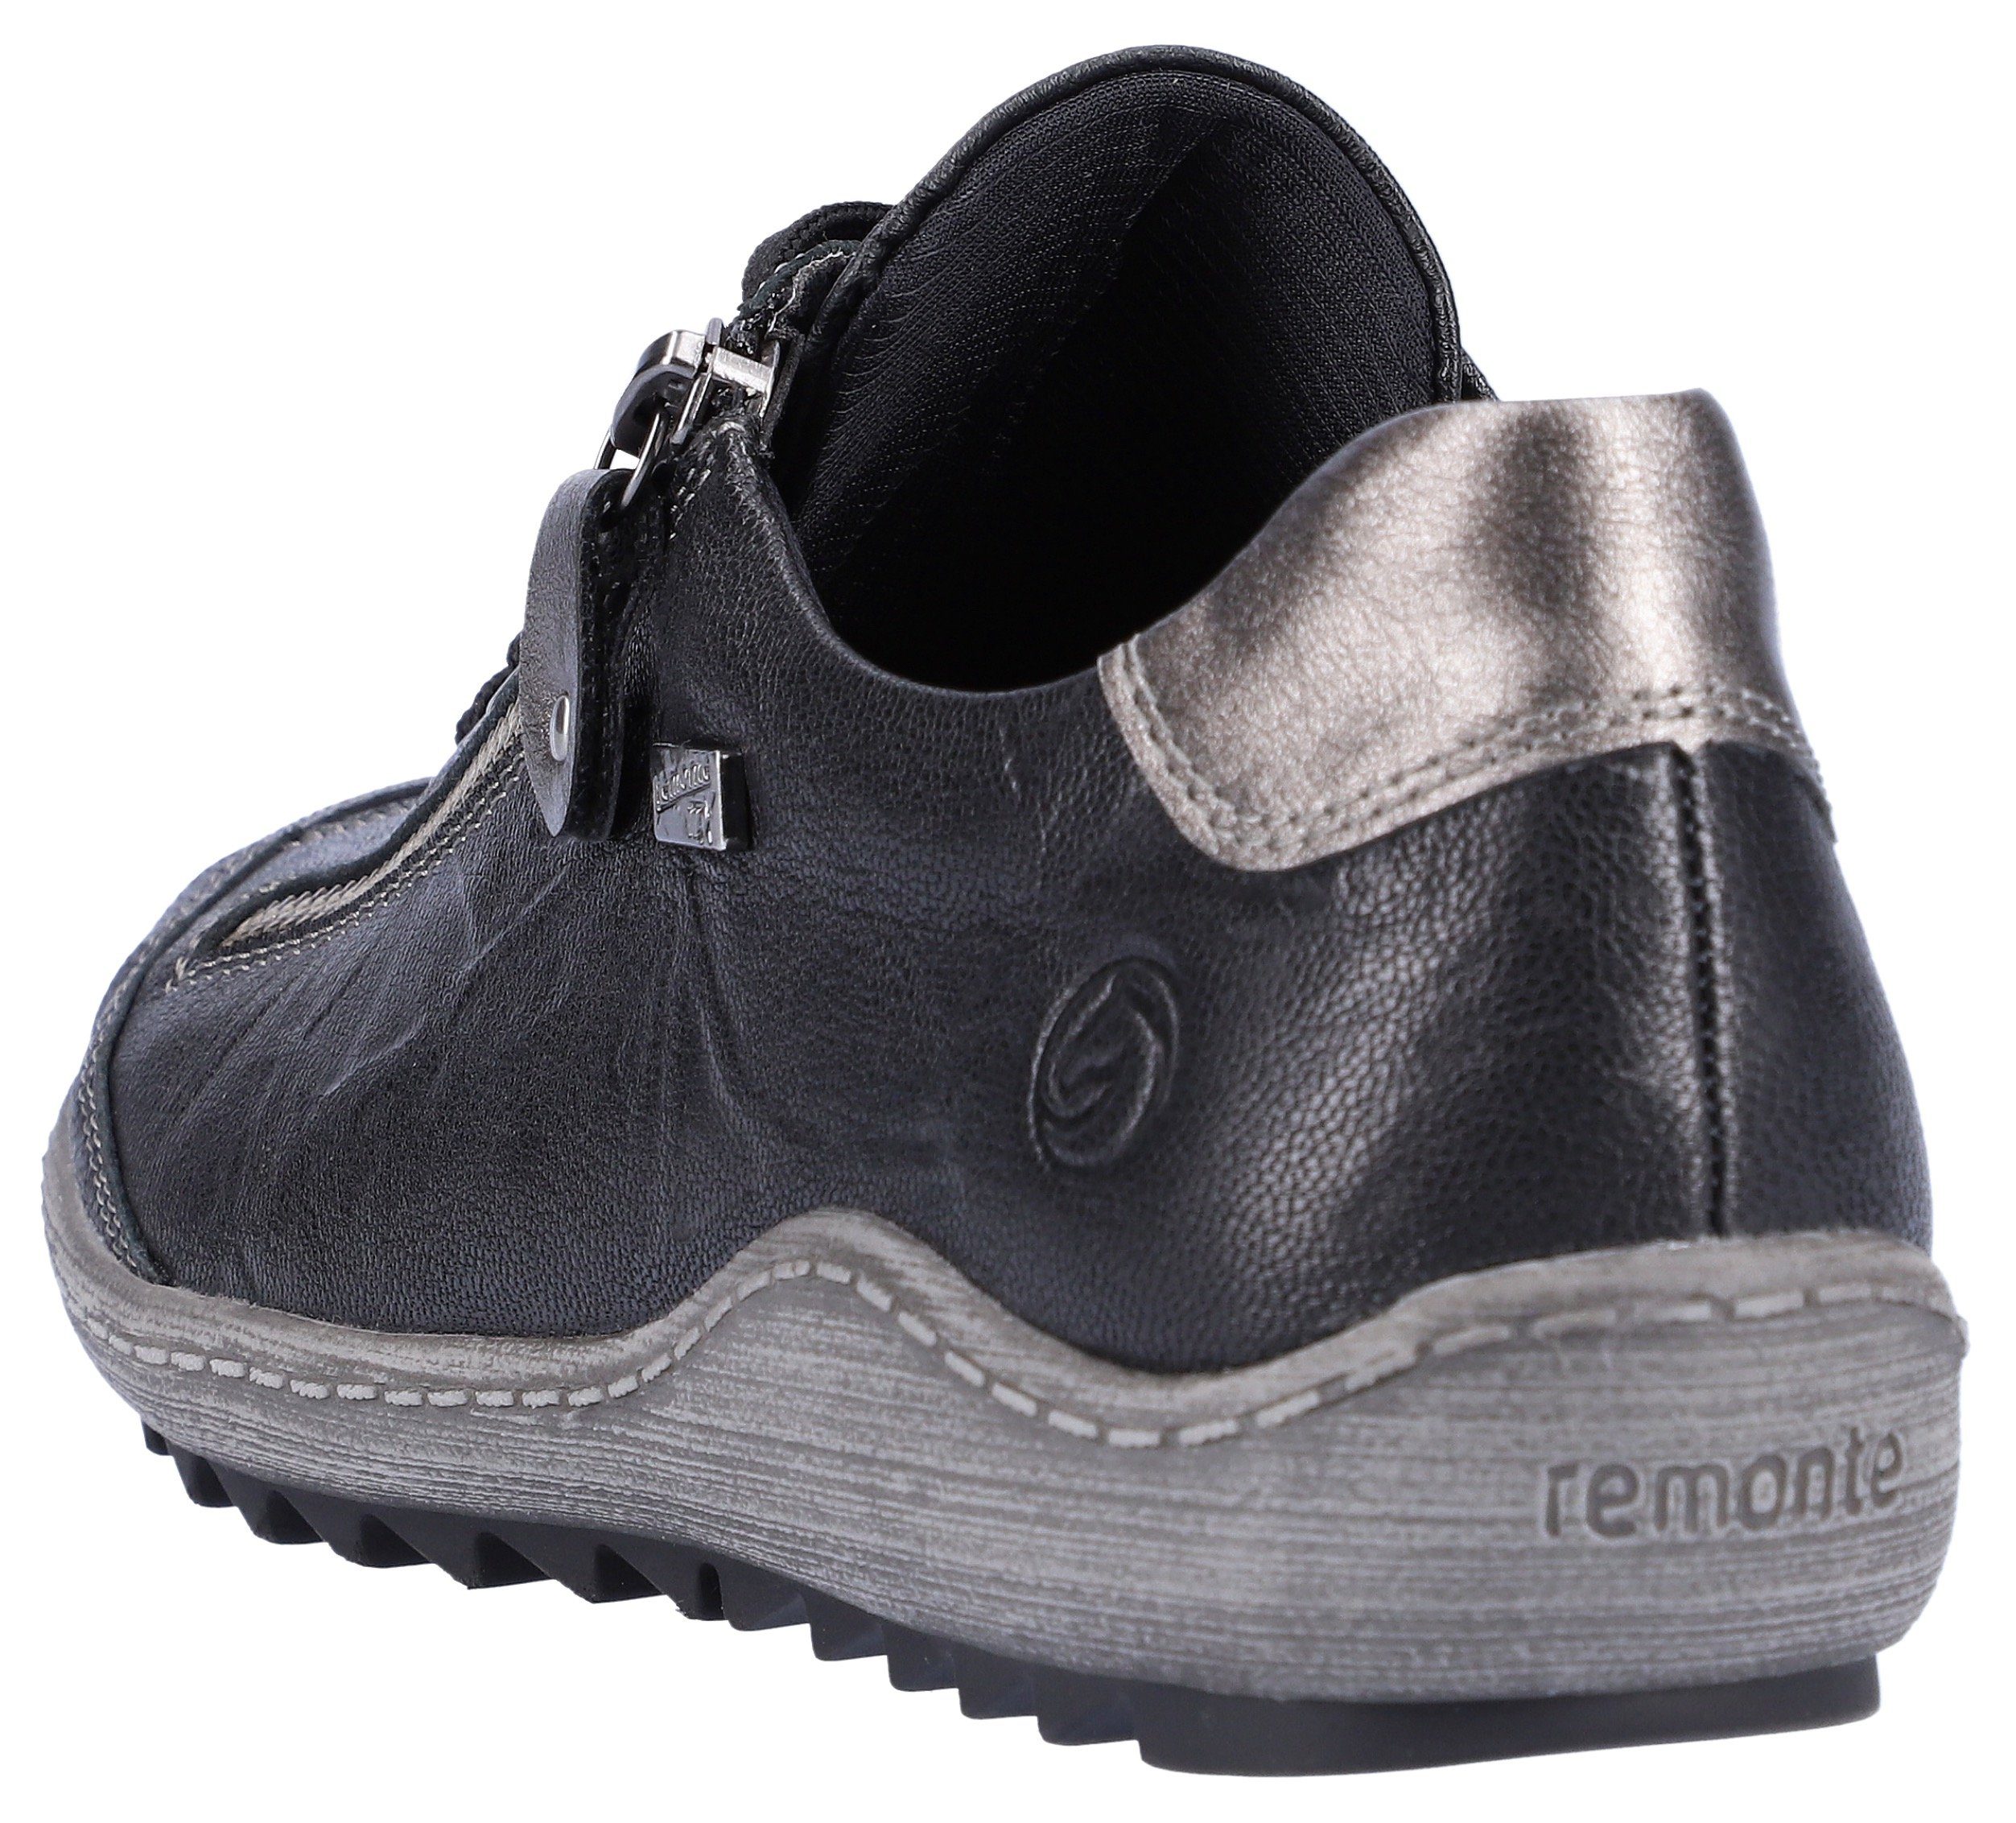 schwarz-silberfarben Tex-Ausstattung Schnürschuh mit Remonte